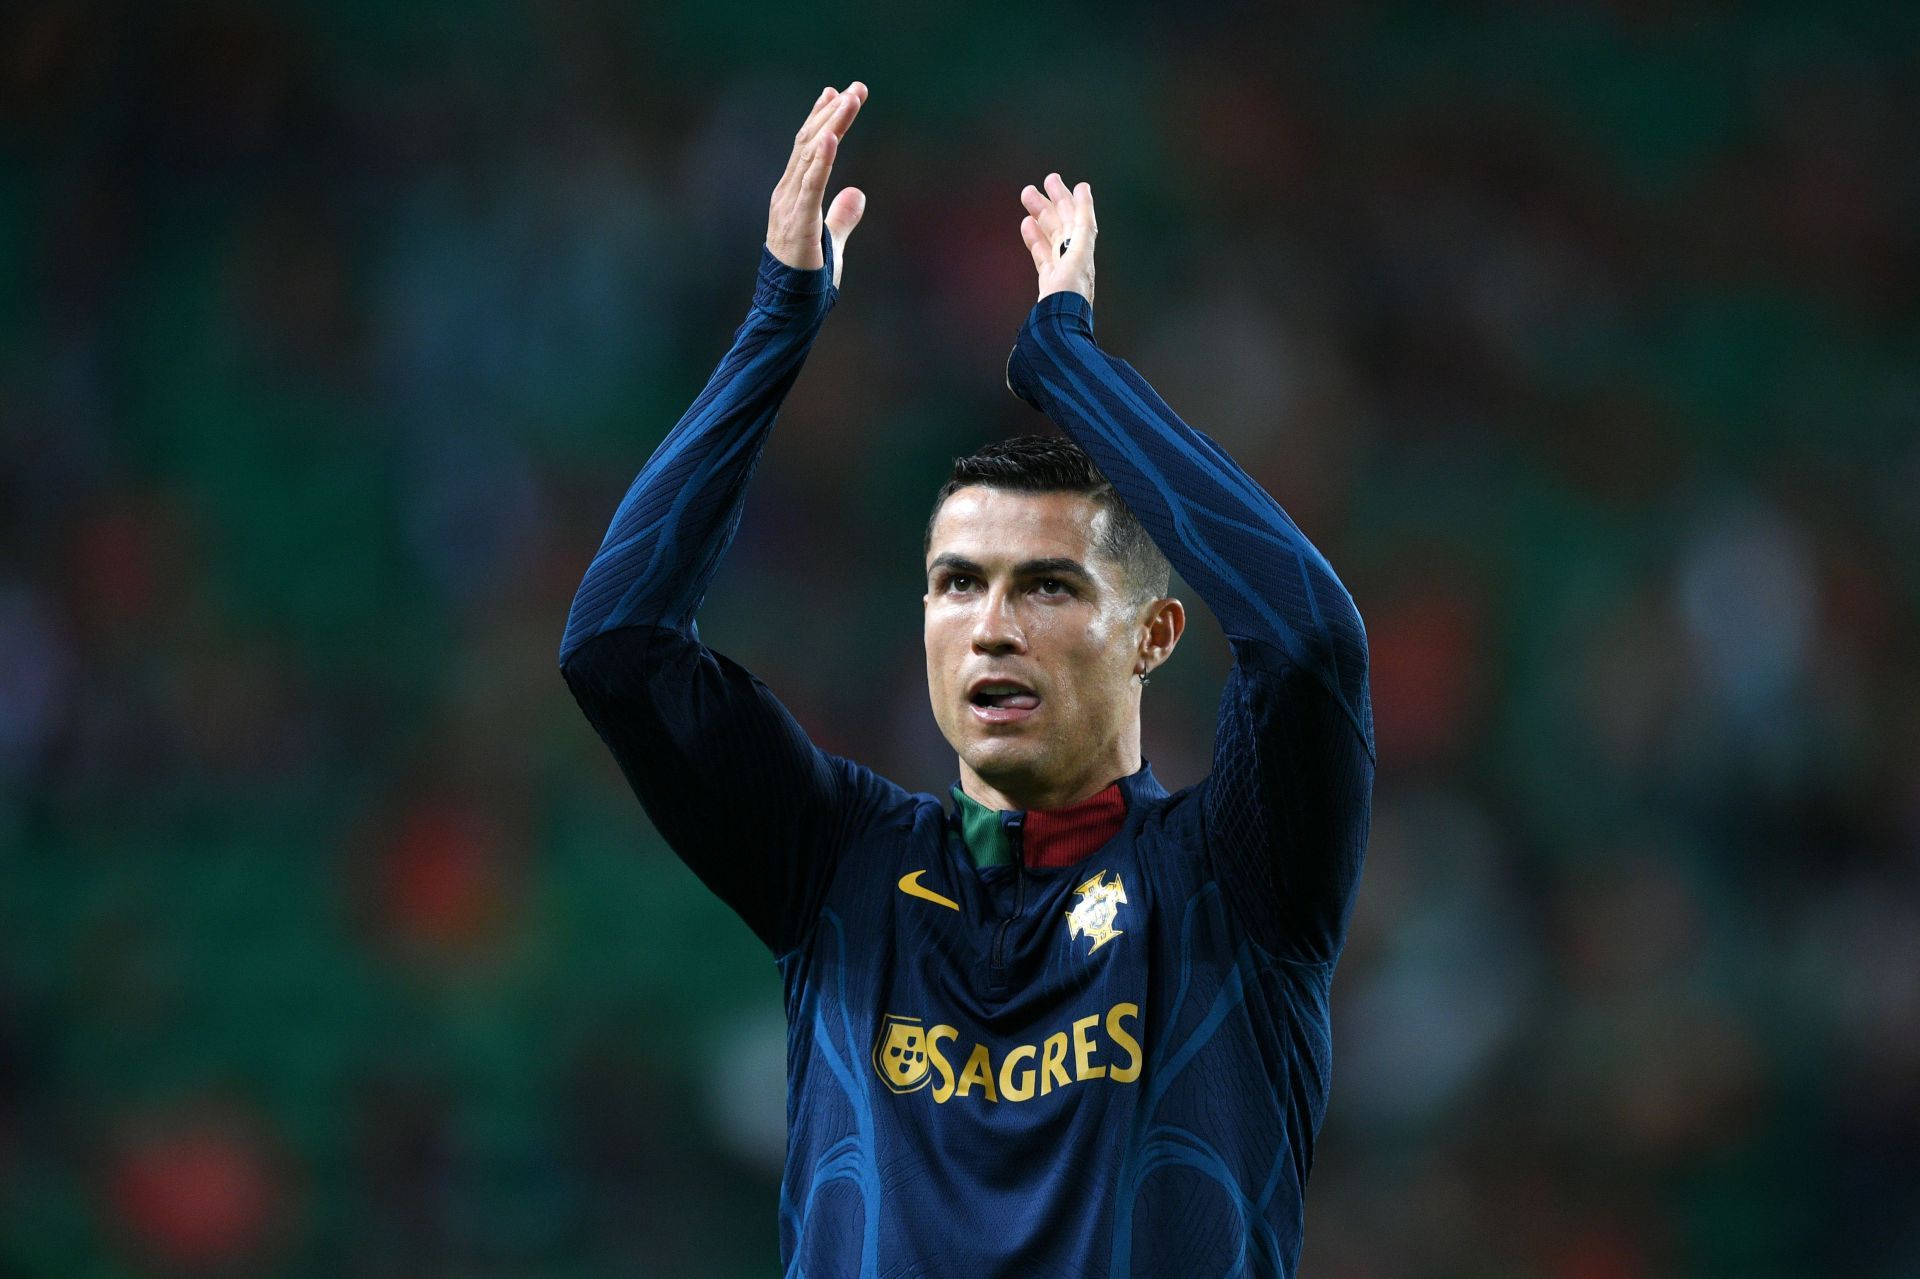 Cristiano Ronaldo had a night to remember.